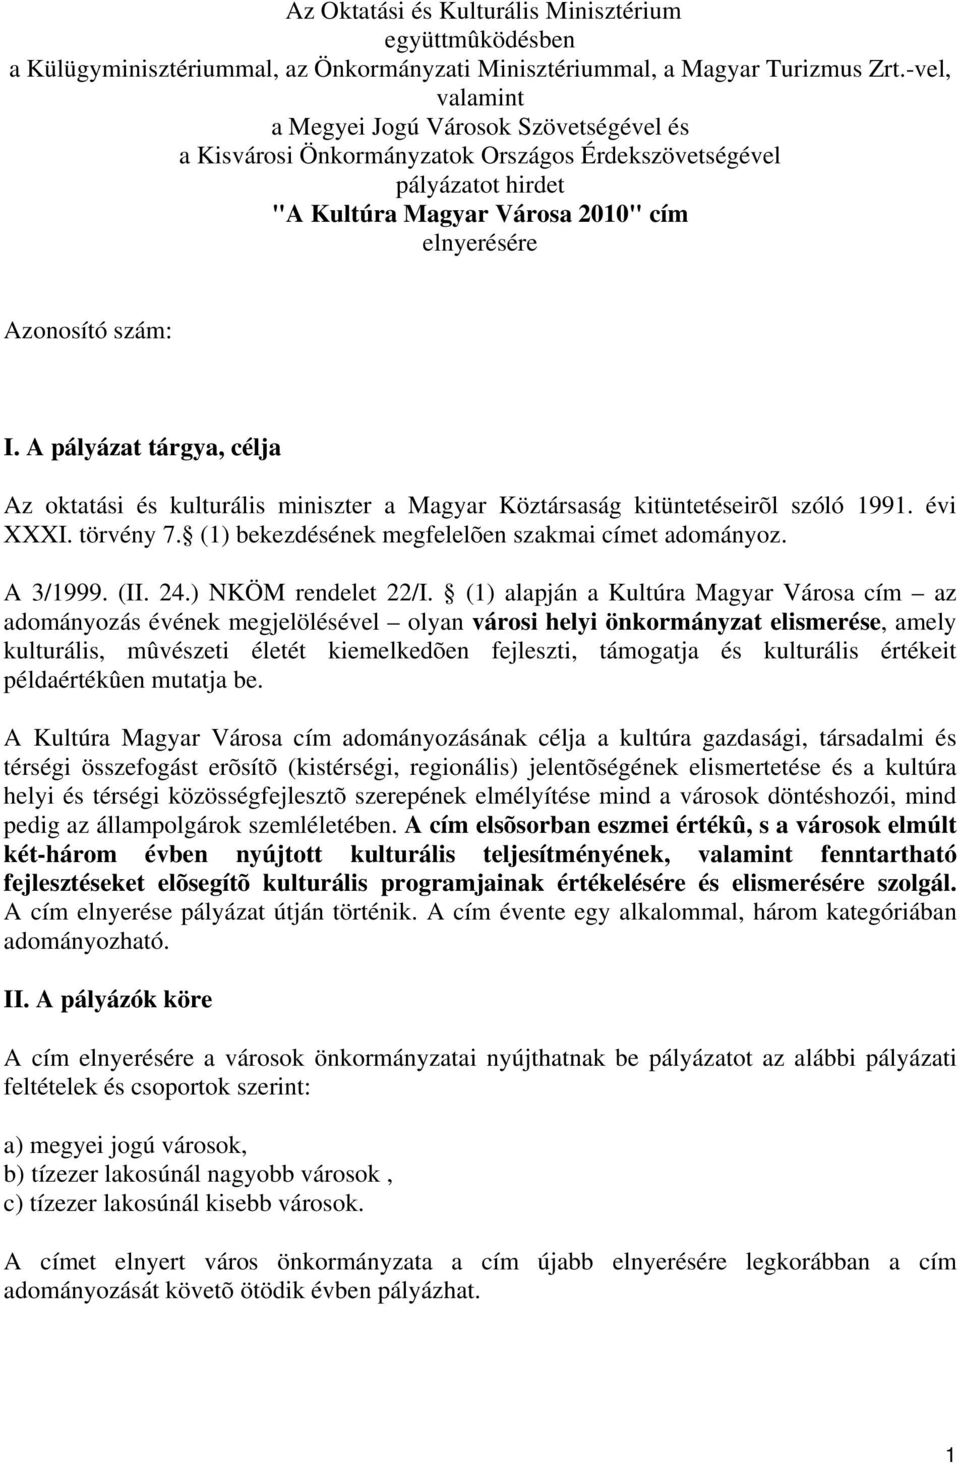 A pályázat tárgya, célja Az oktatási és kulturális miniszter a Magyar Köztársaság kitüntetéseirõl szóló 1991. évi XXXI. törvény 7. (1) bekezdésének megfelelõen szakmai címet adományoz. A 3/1999. (II.